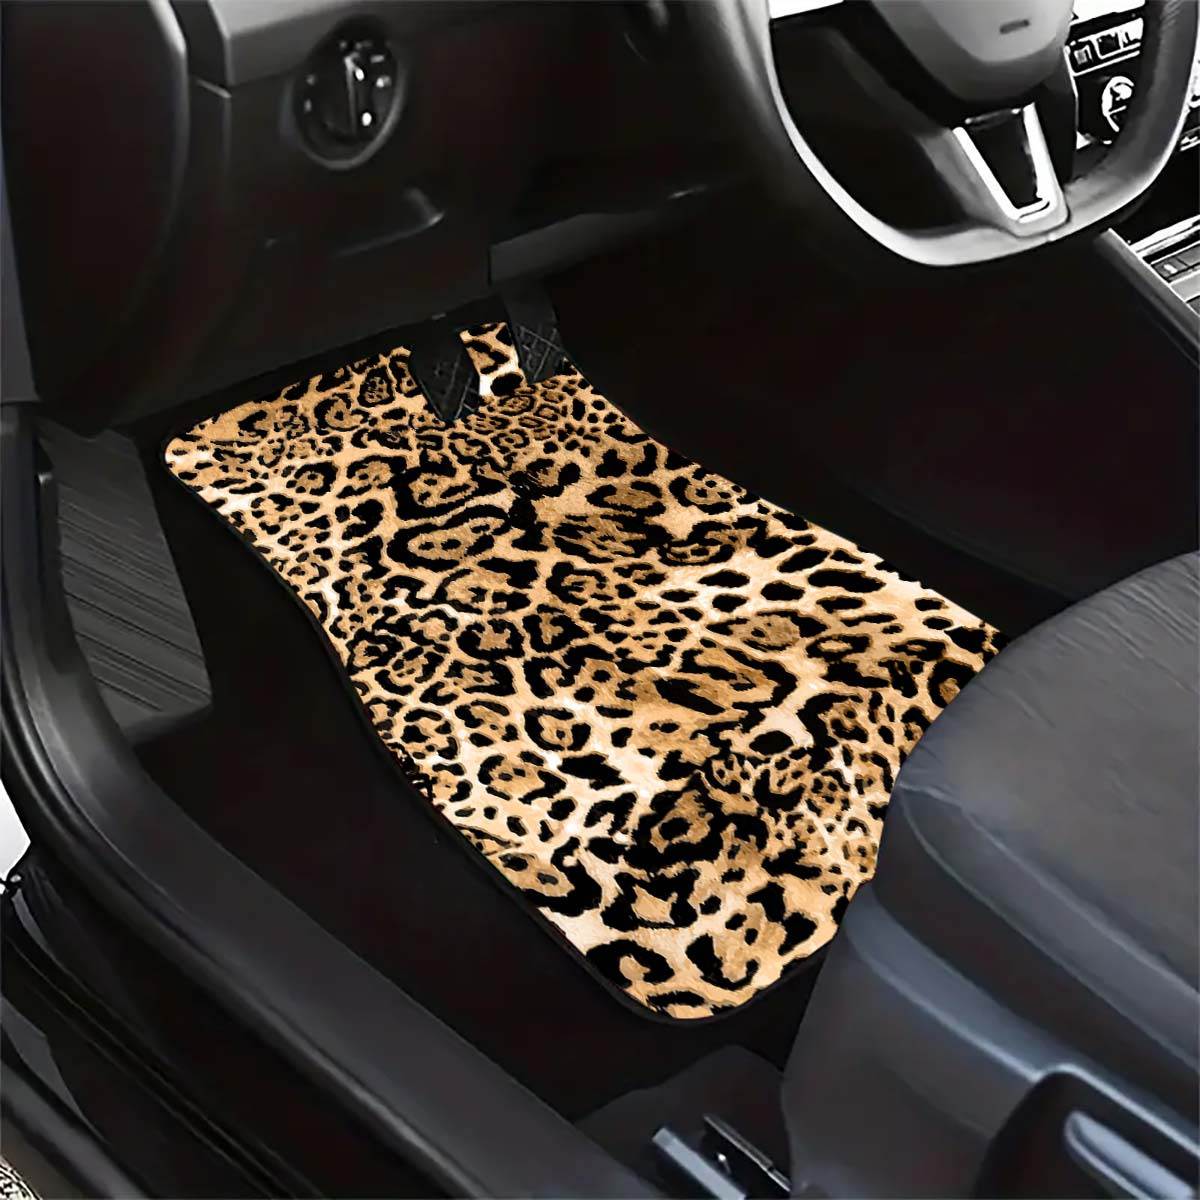 

1pc/2pcs/4pcs Leopard Pattern Car Floor Mats, Car Front & Rear Floor Protector Pads, Auto Interior Accessories, For Most Cars, Sedan, Suv, Van